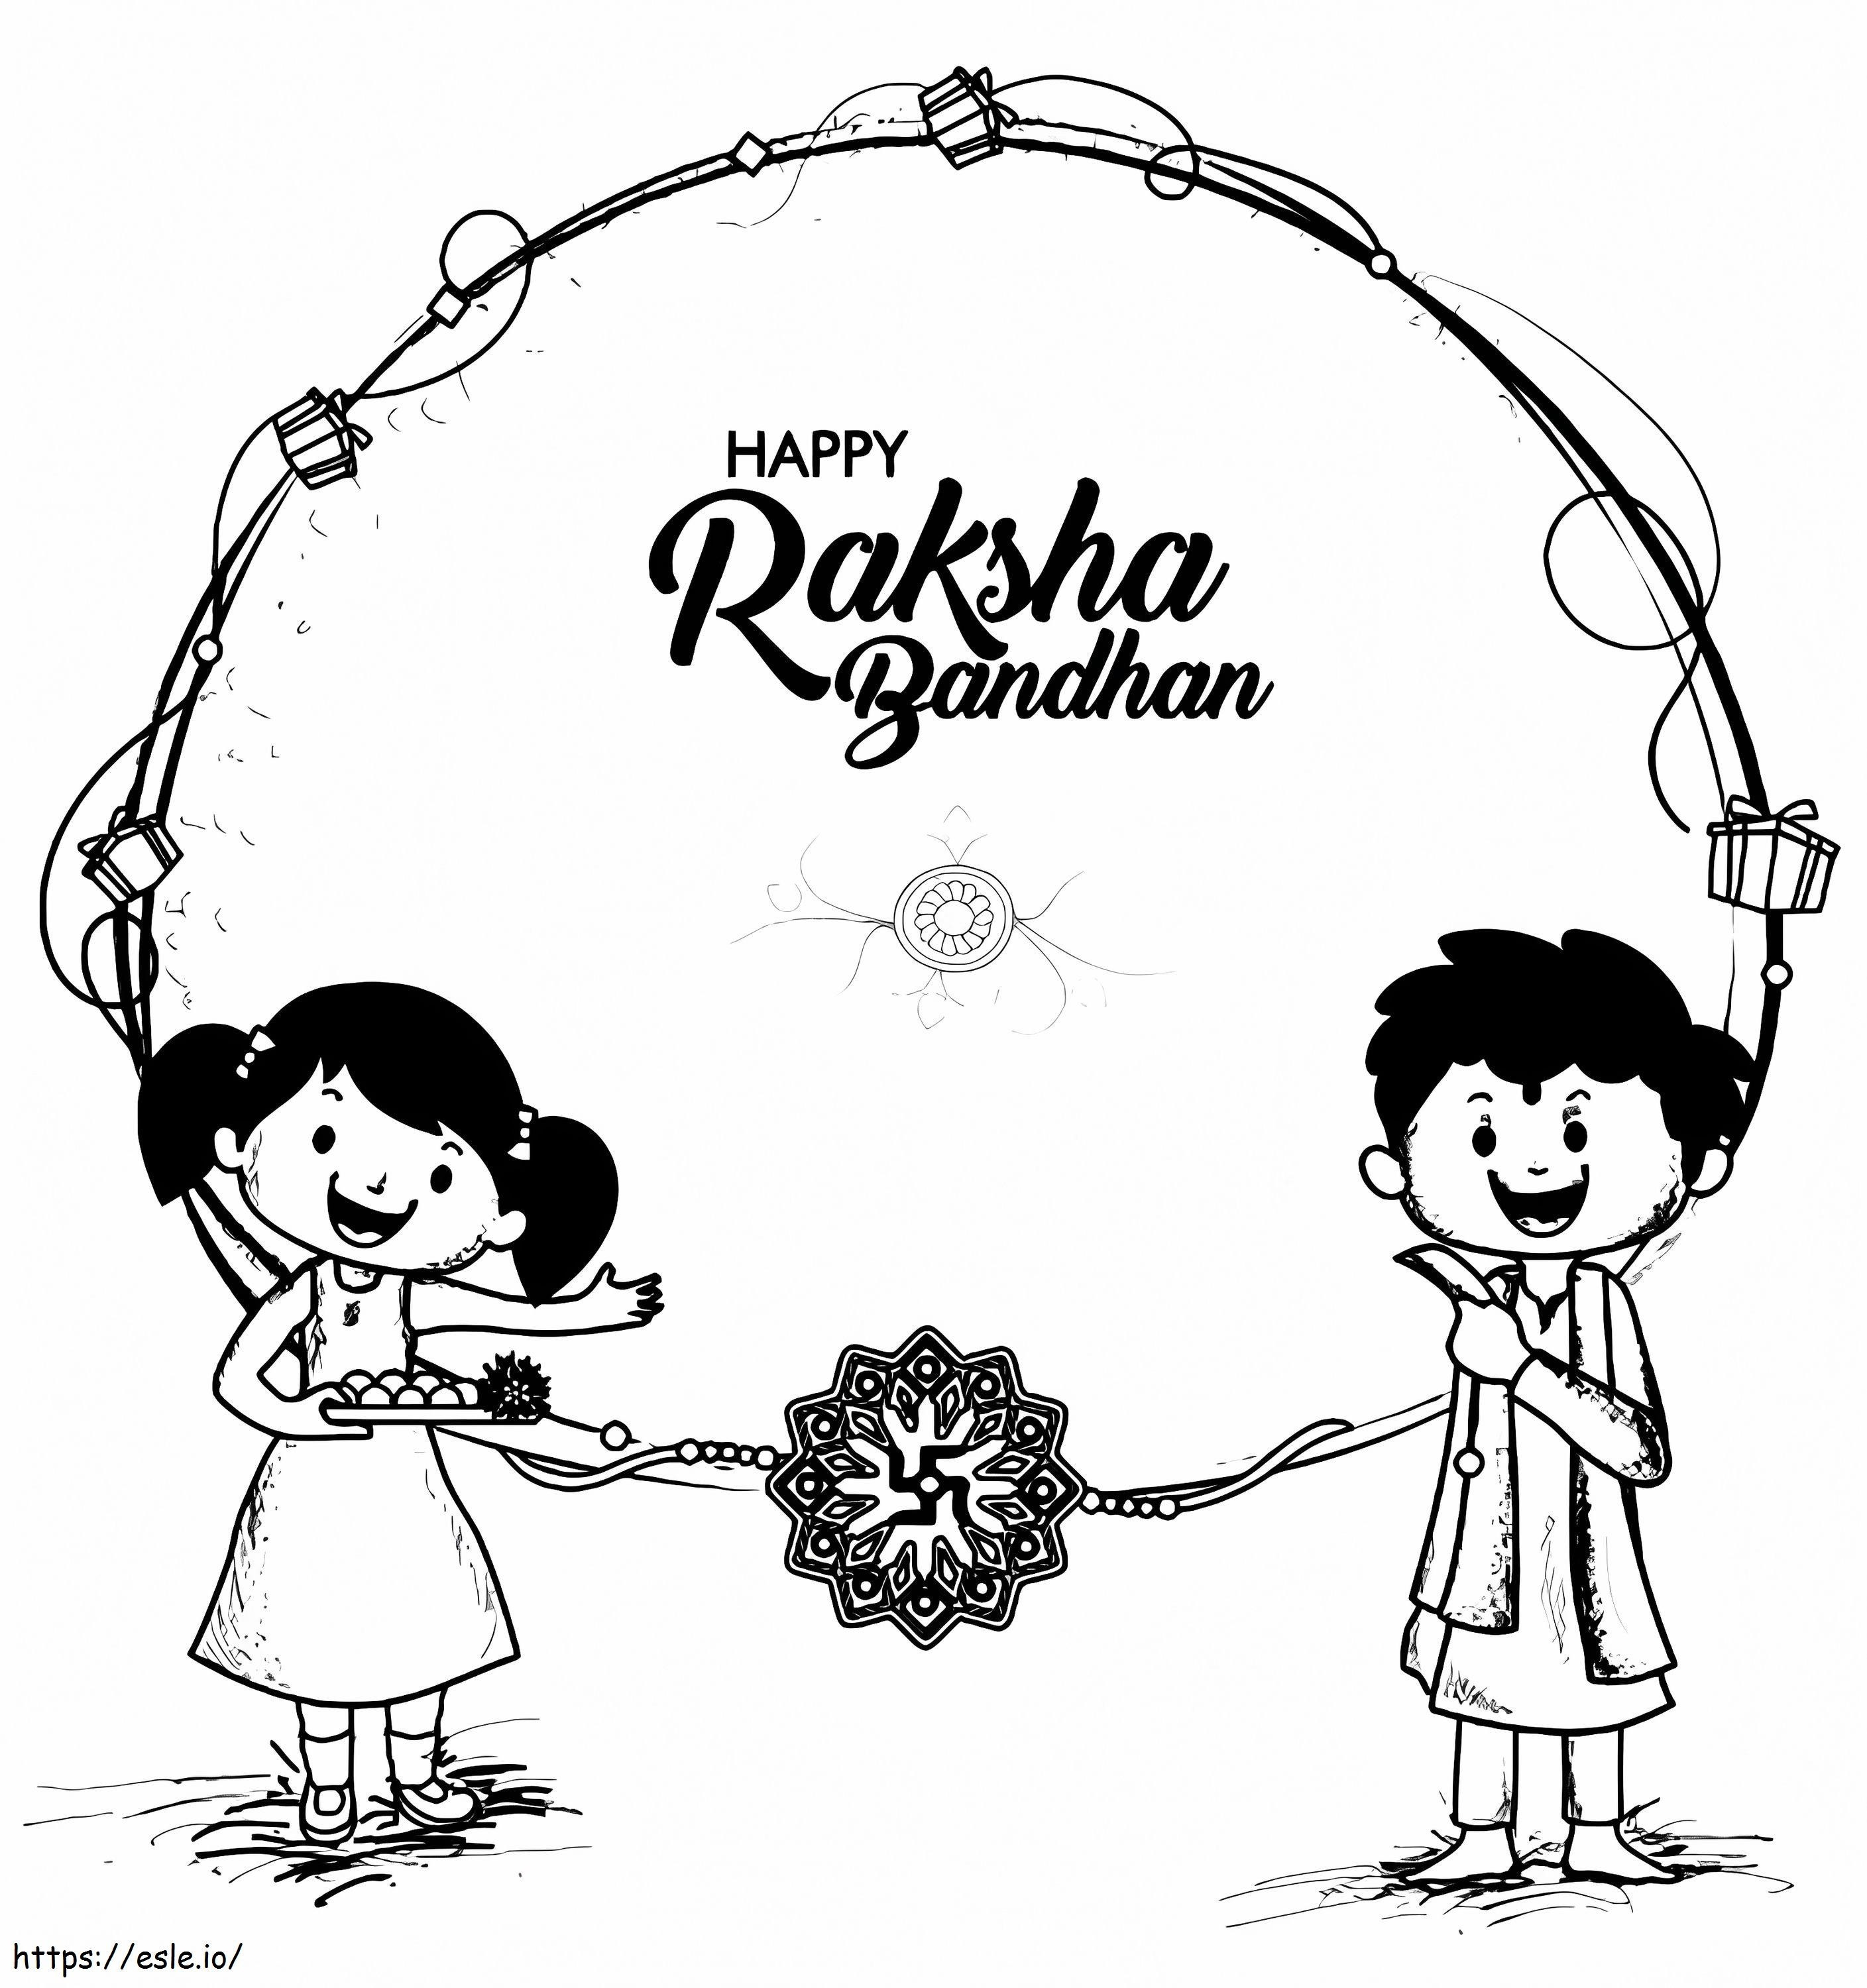 Raksha Bandhan 8 ausmalbilder